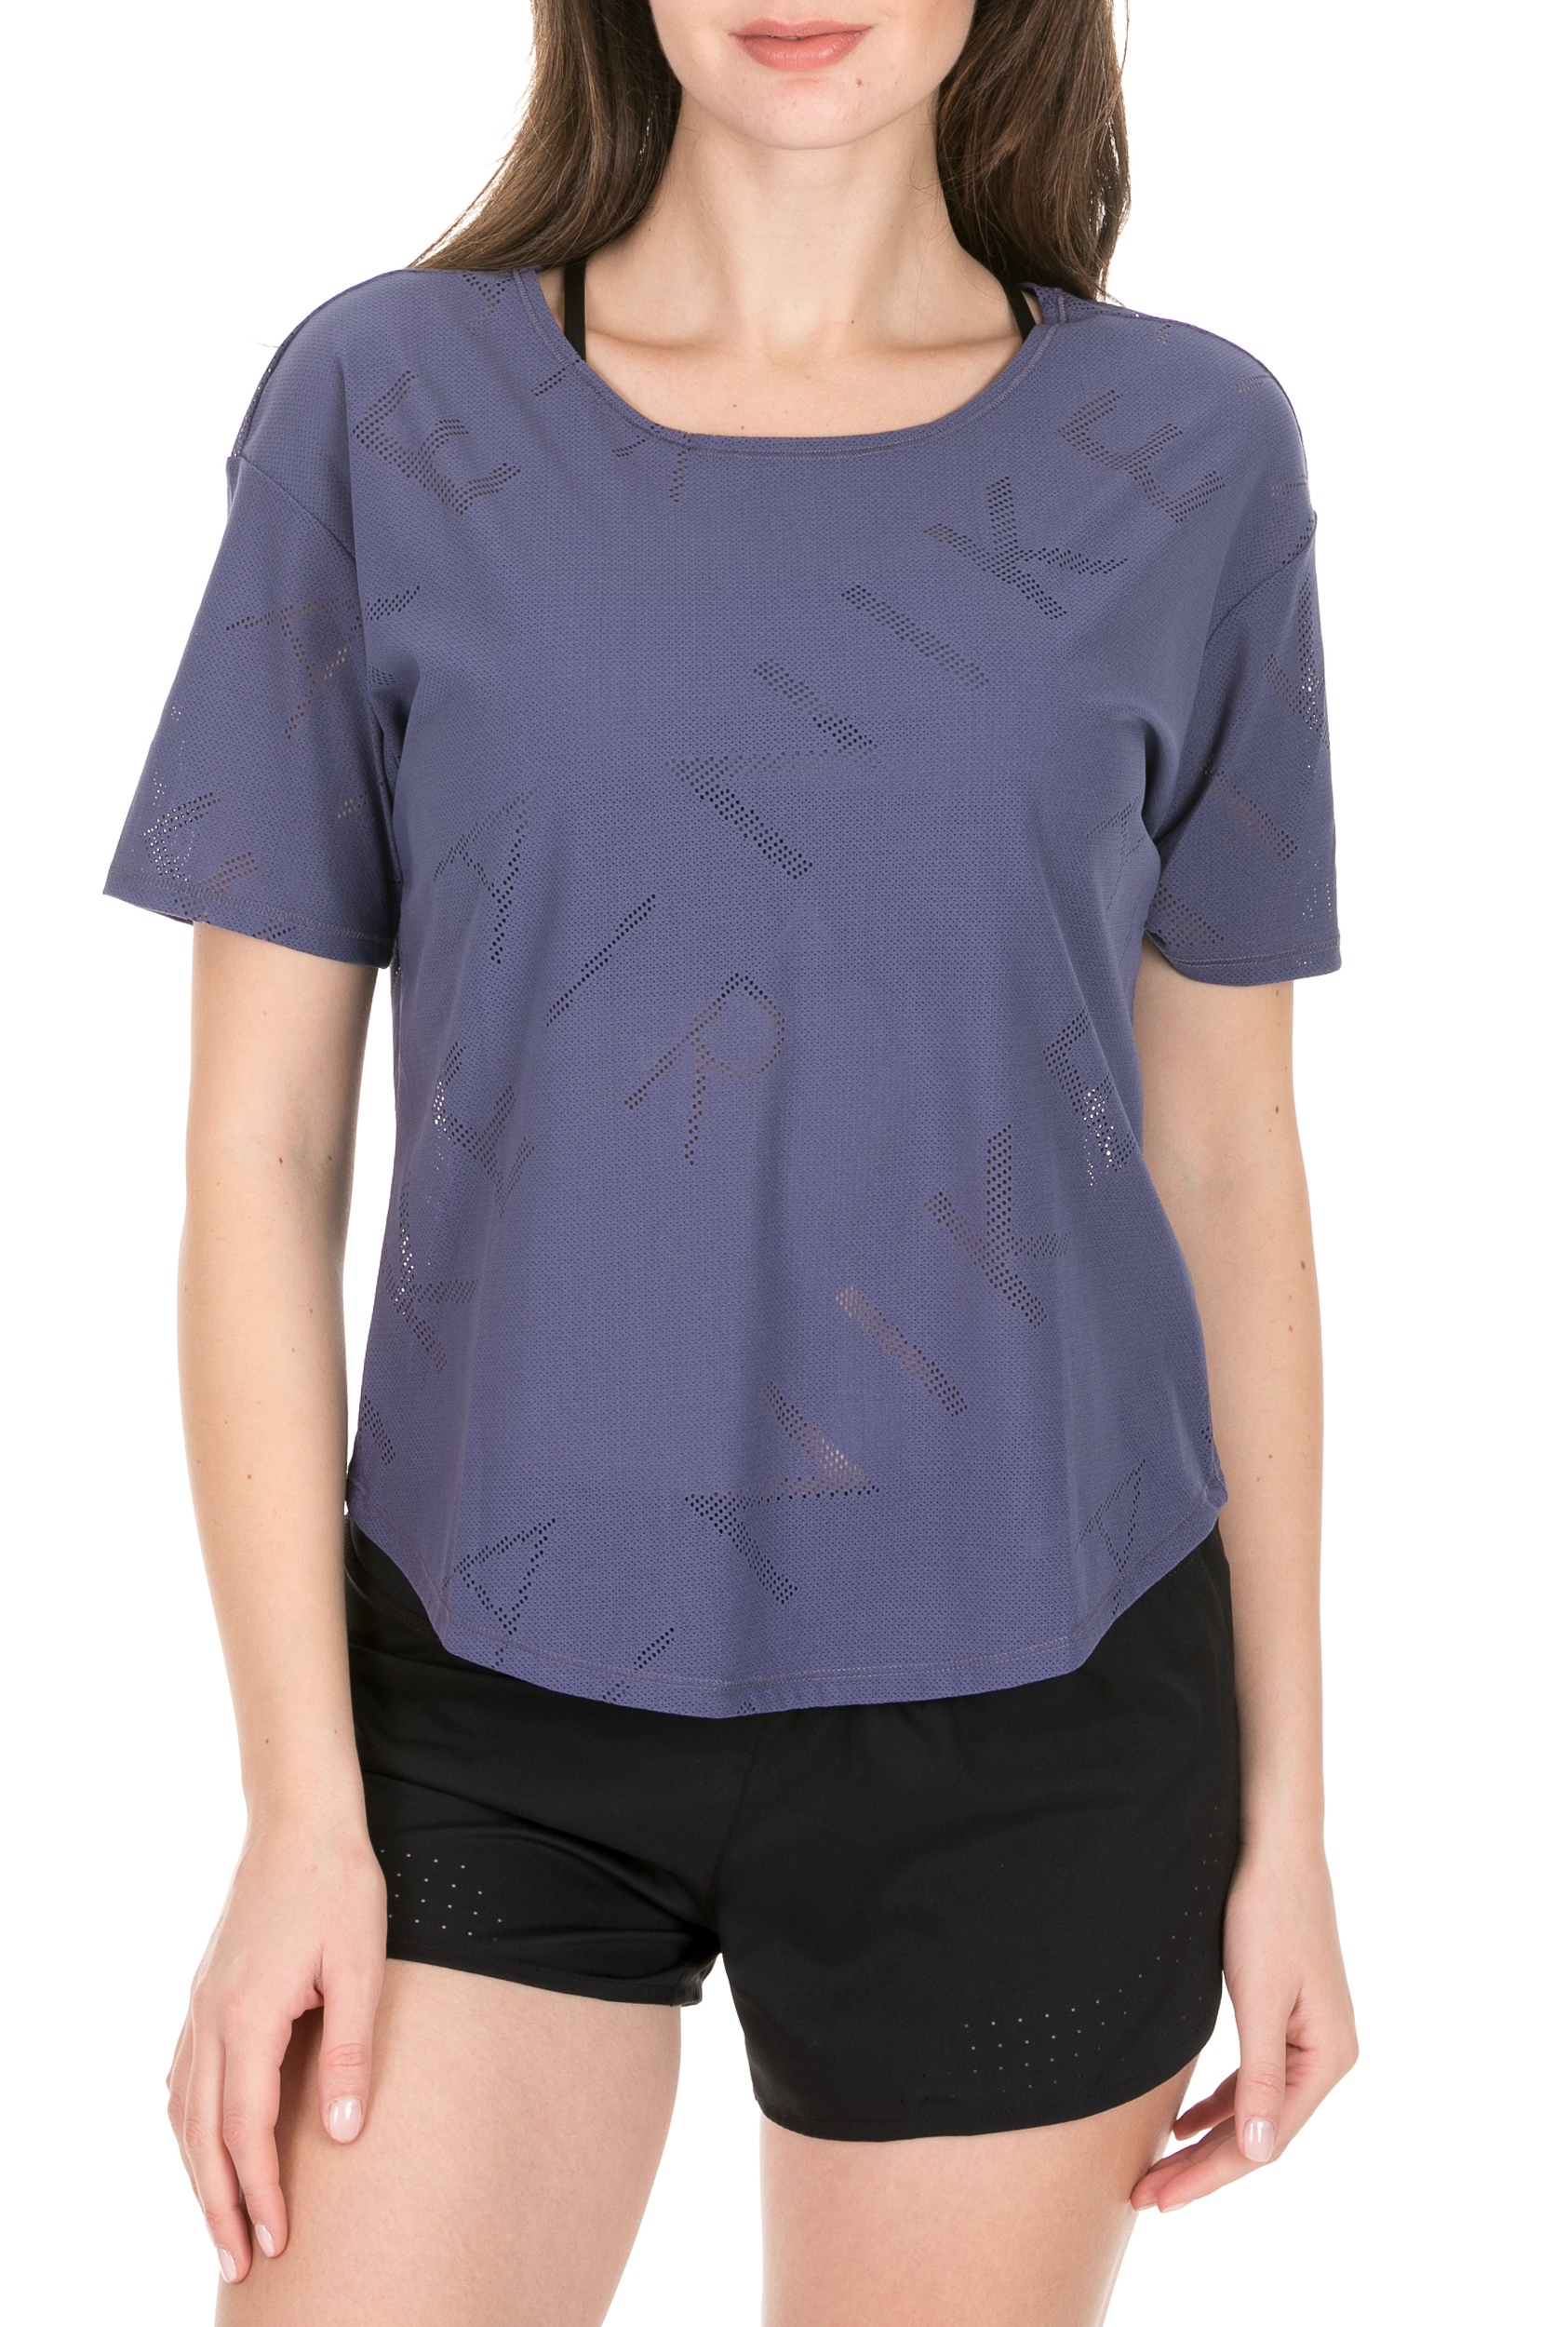 Γυναικεία/Ρούχα/Αθλητικά/T-shirt-Τοπ NIKE - Γυναικεία μπλούζα NIKE TOP AIR μοβ